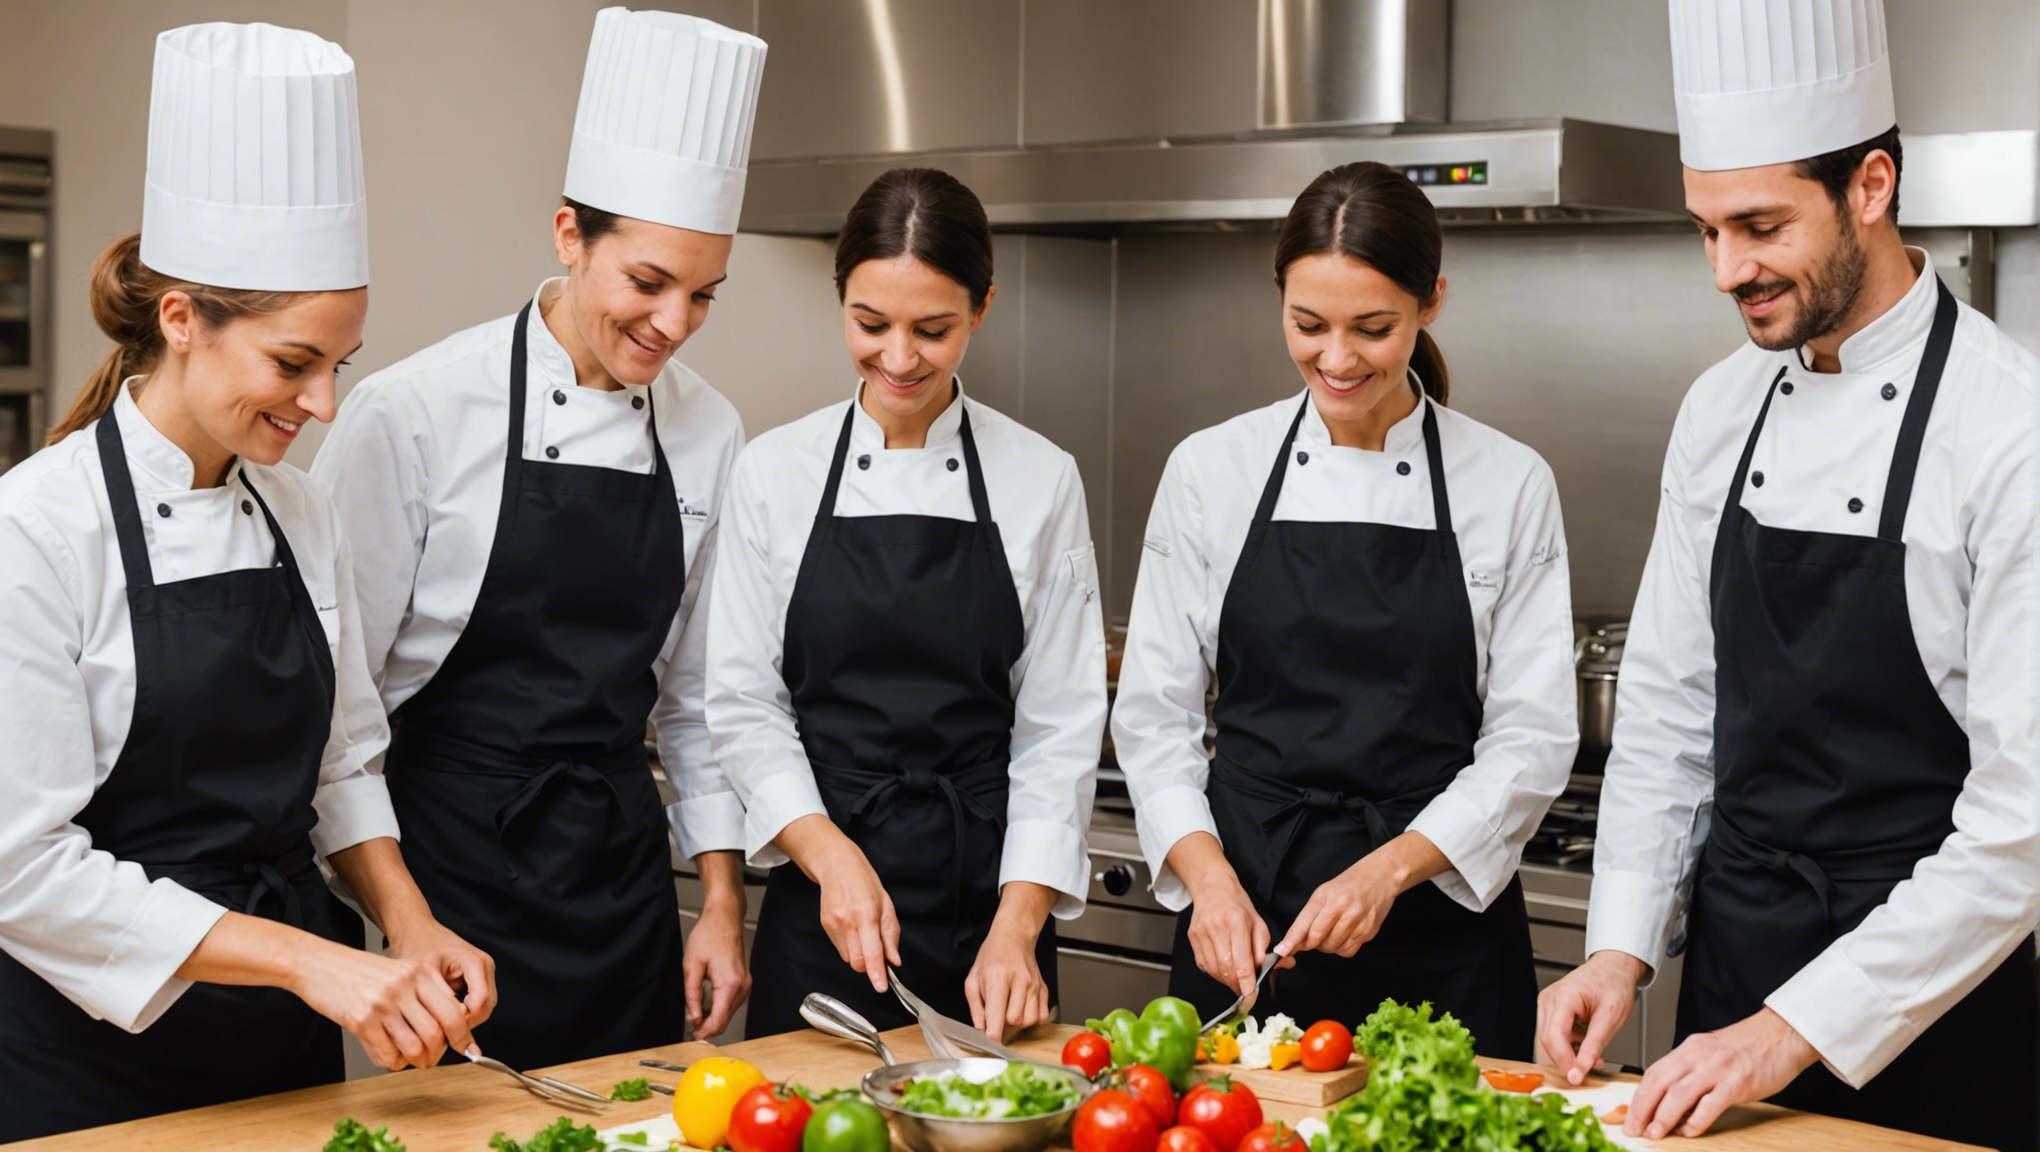 découvrez l'importance de suivre une formation de cuisine pour adultes et les bénéfices que cela peut apporter à votre vie quotidienne.